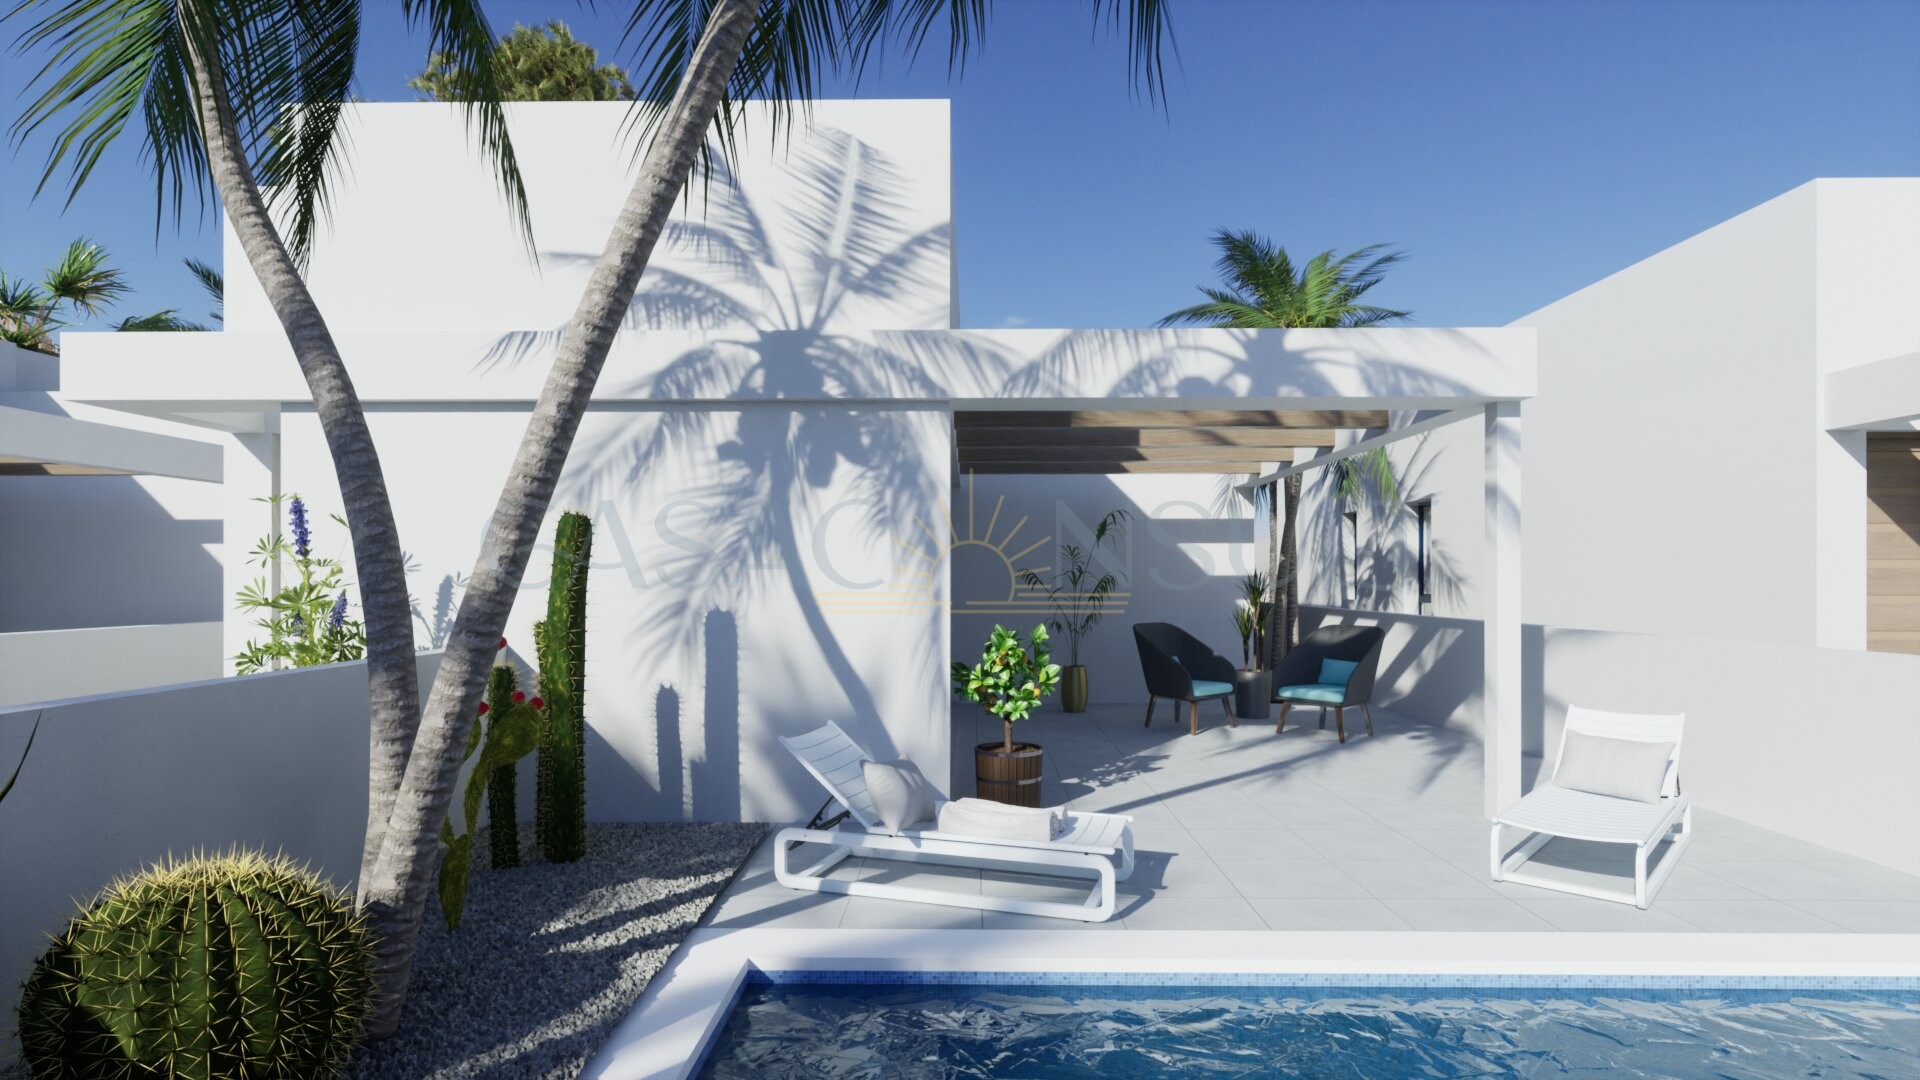 Nieuwbouwvilla in Playa Blanca met privé-zwembad